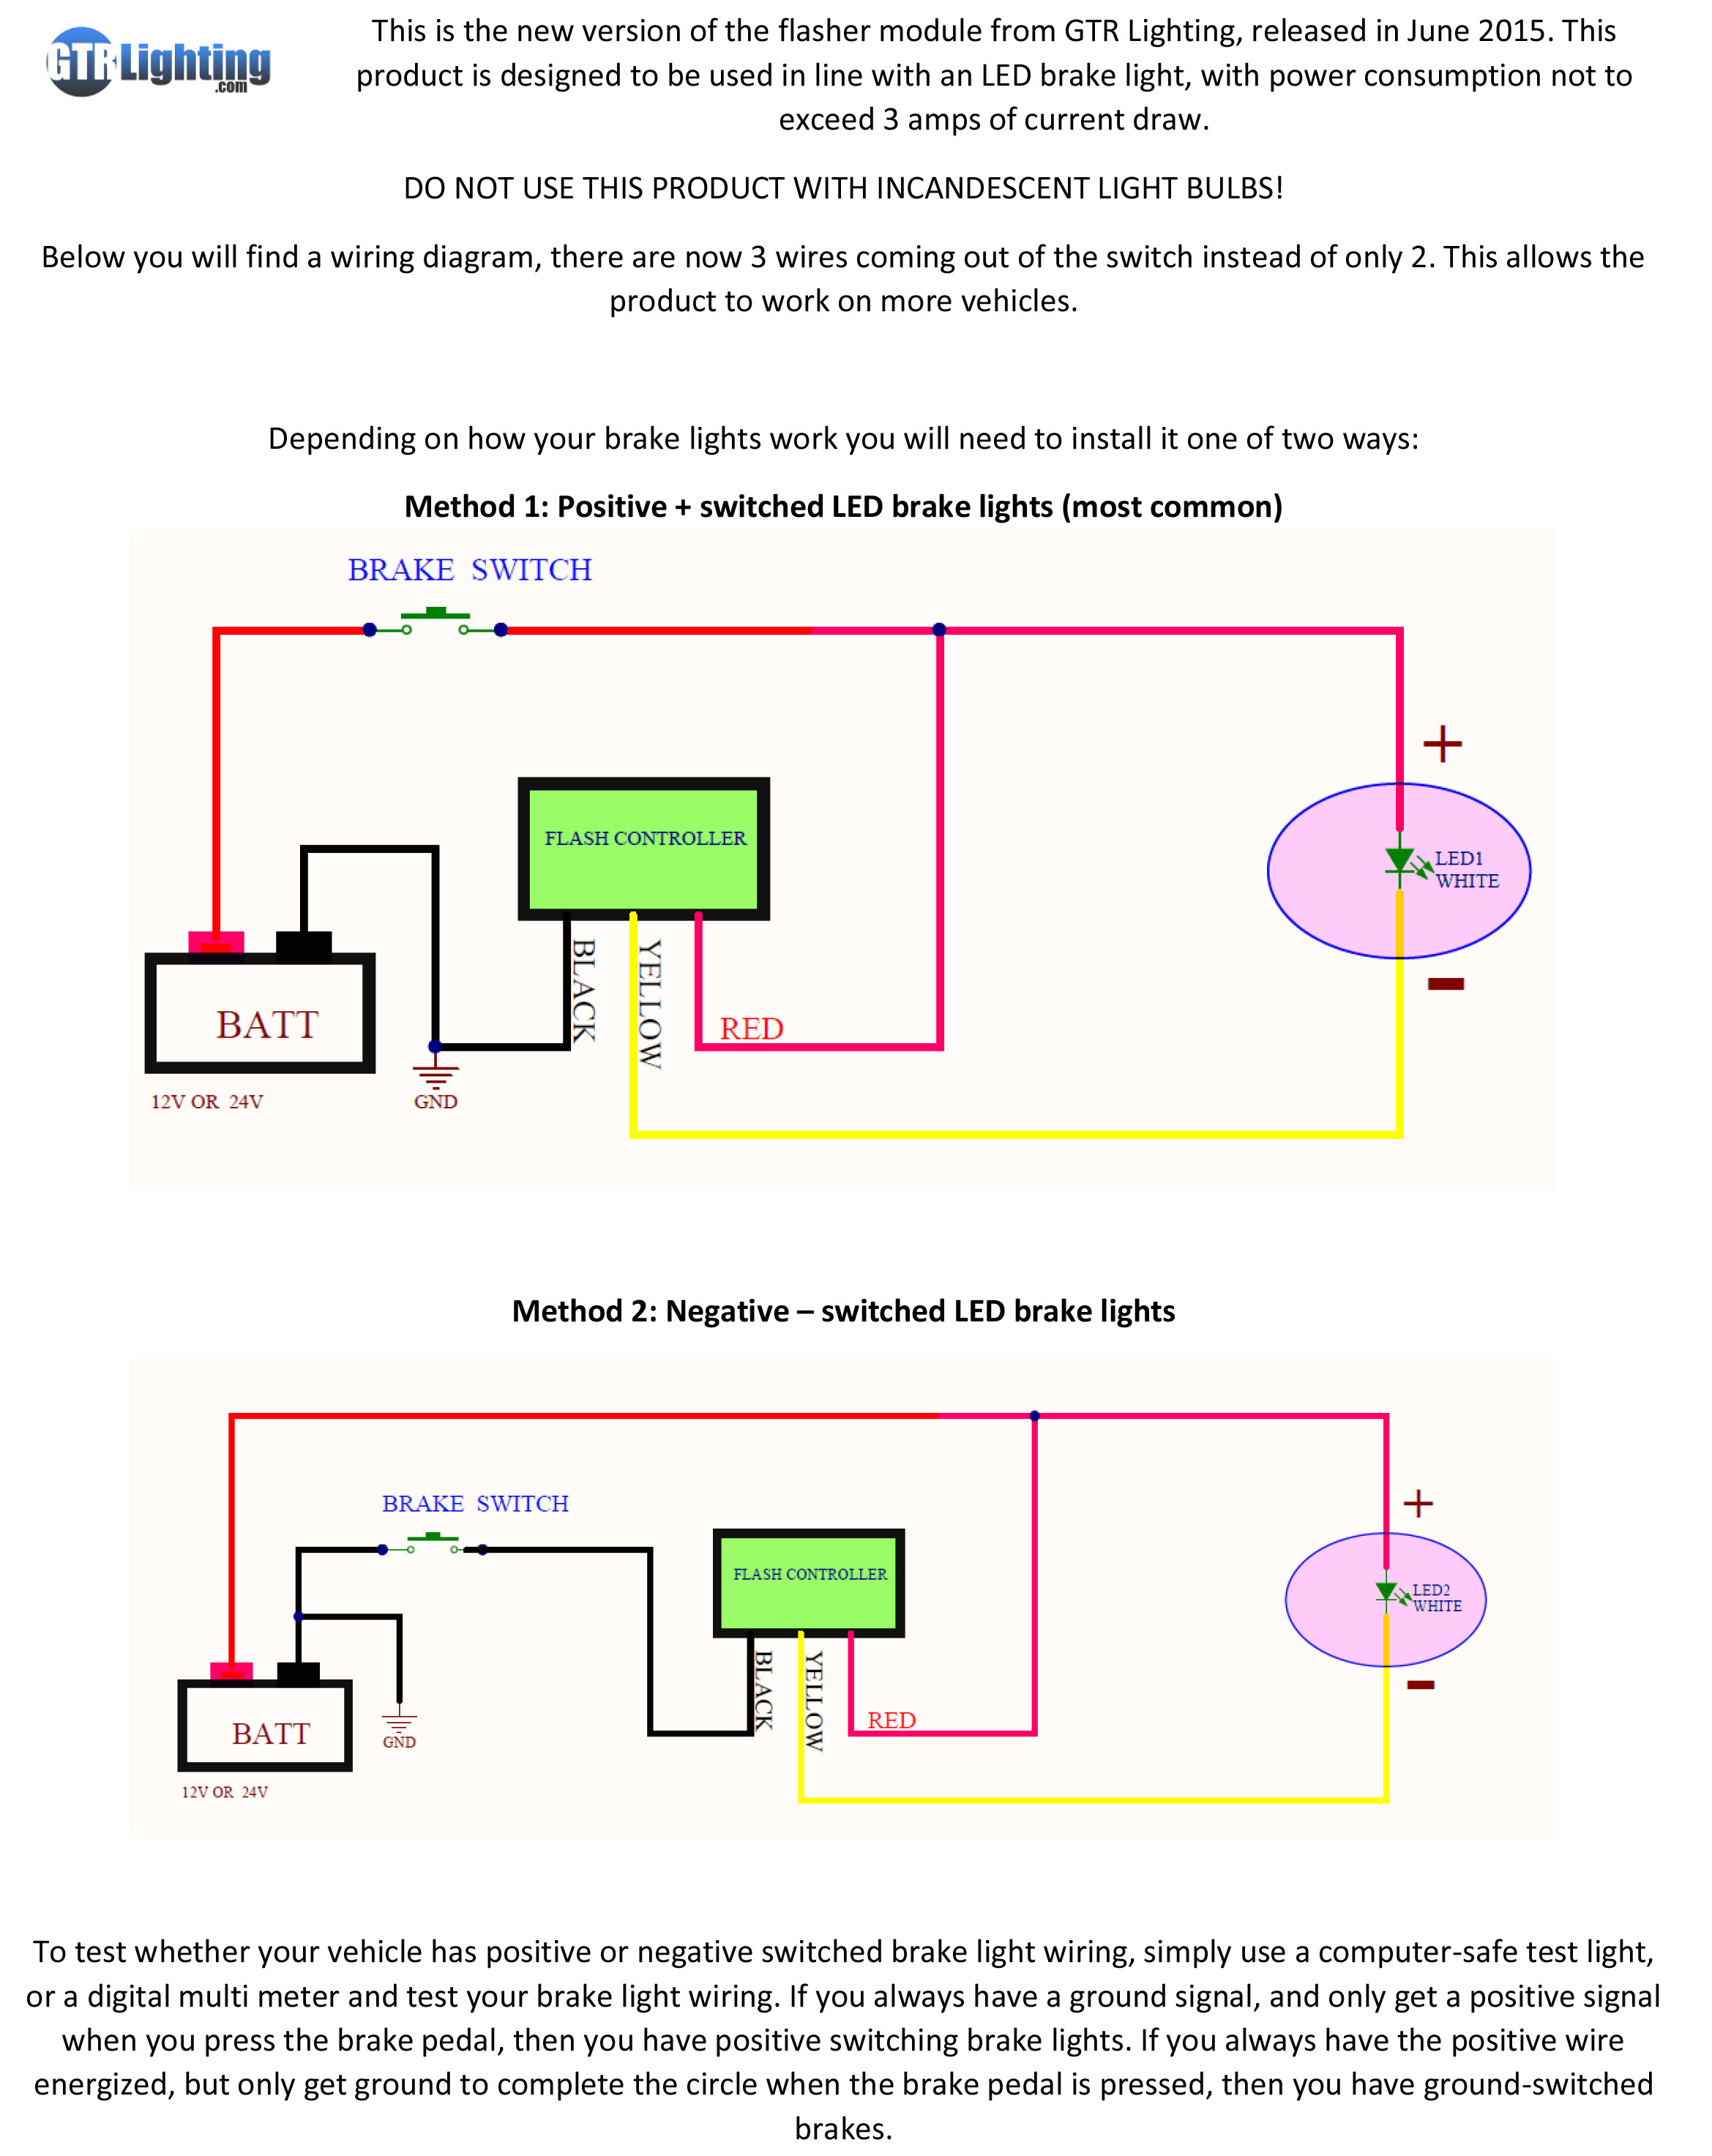 How Do I Install A 3Rd Brake Light Flasher? - Gtr Lighting - Third Brake Light Wiring Diagram